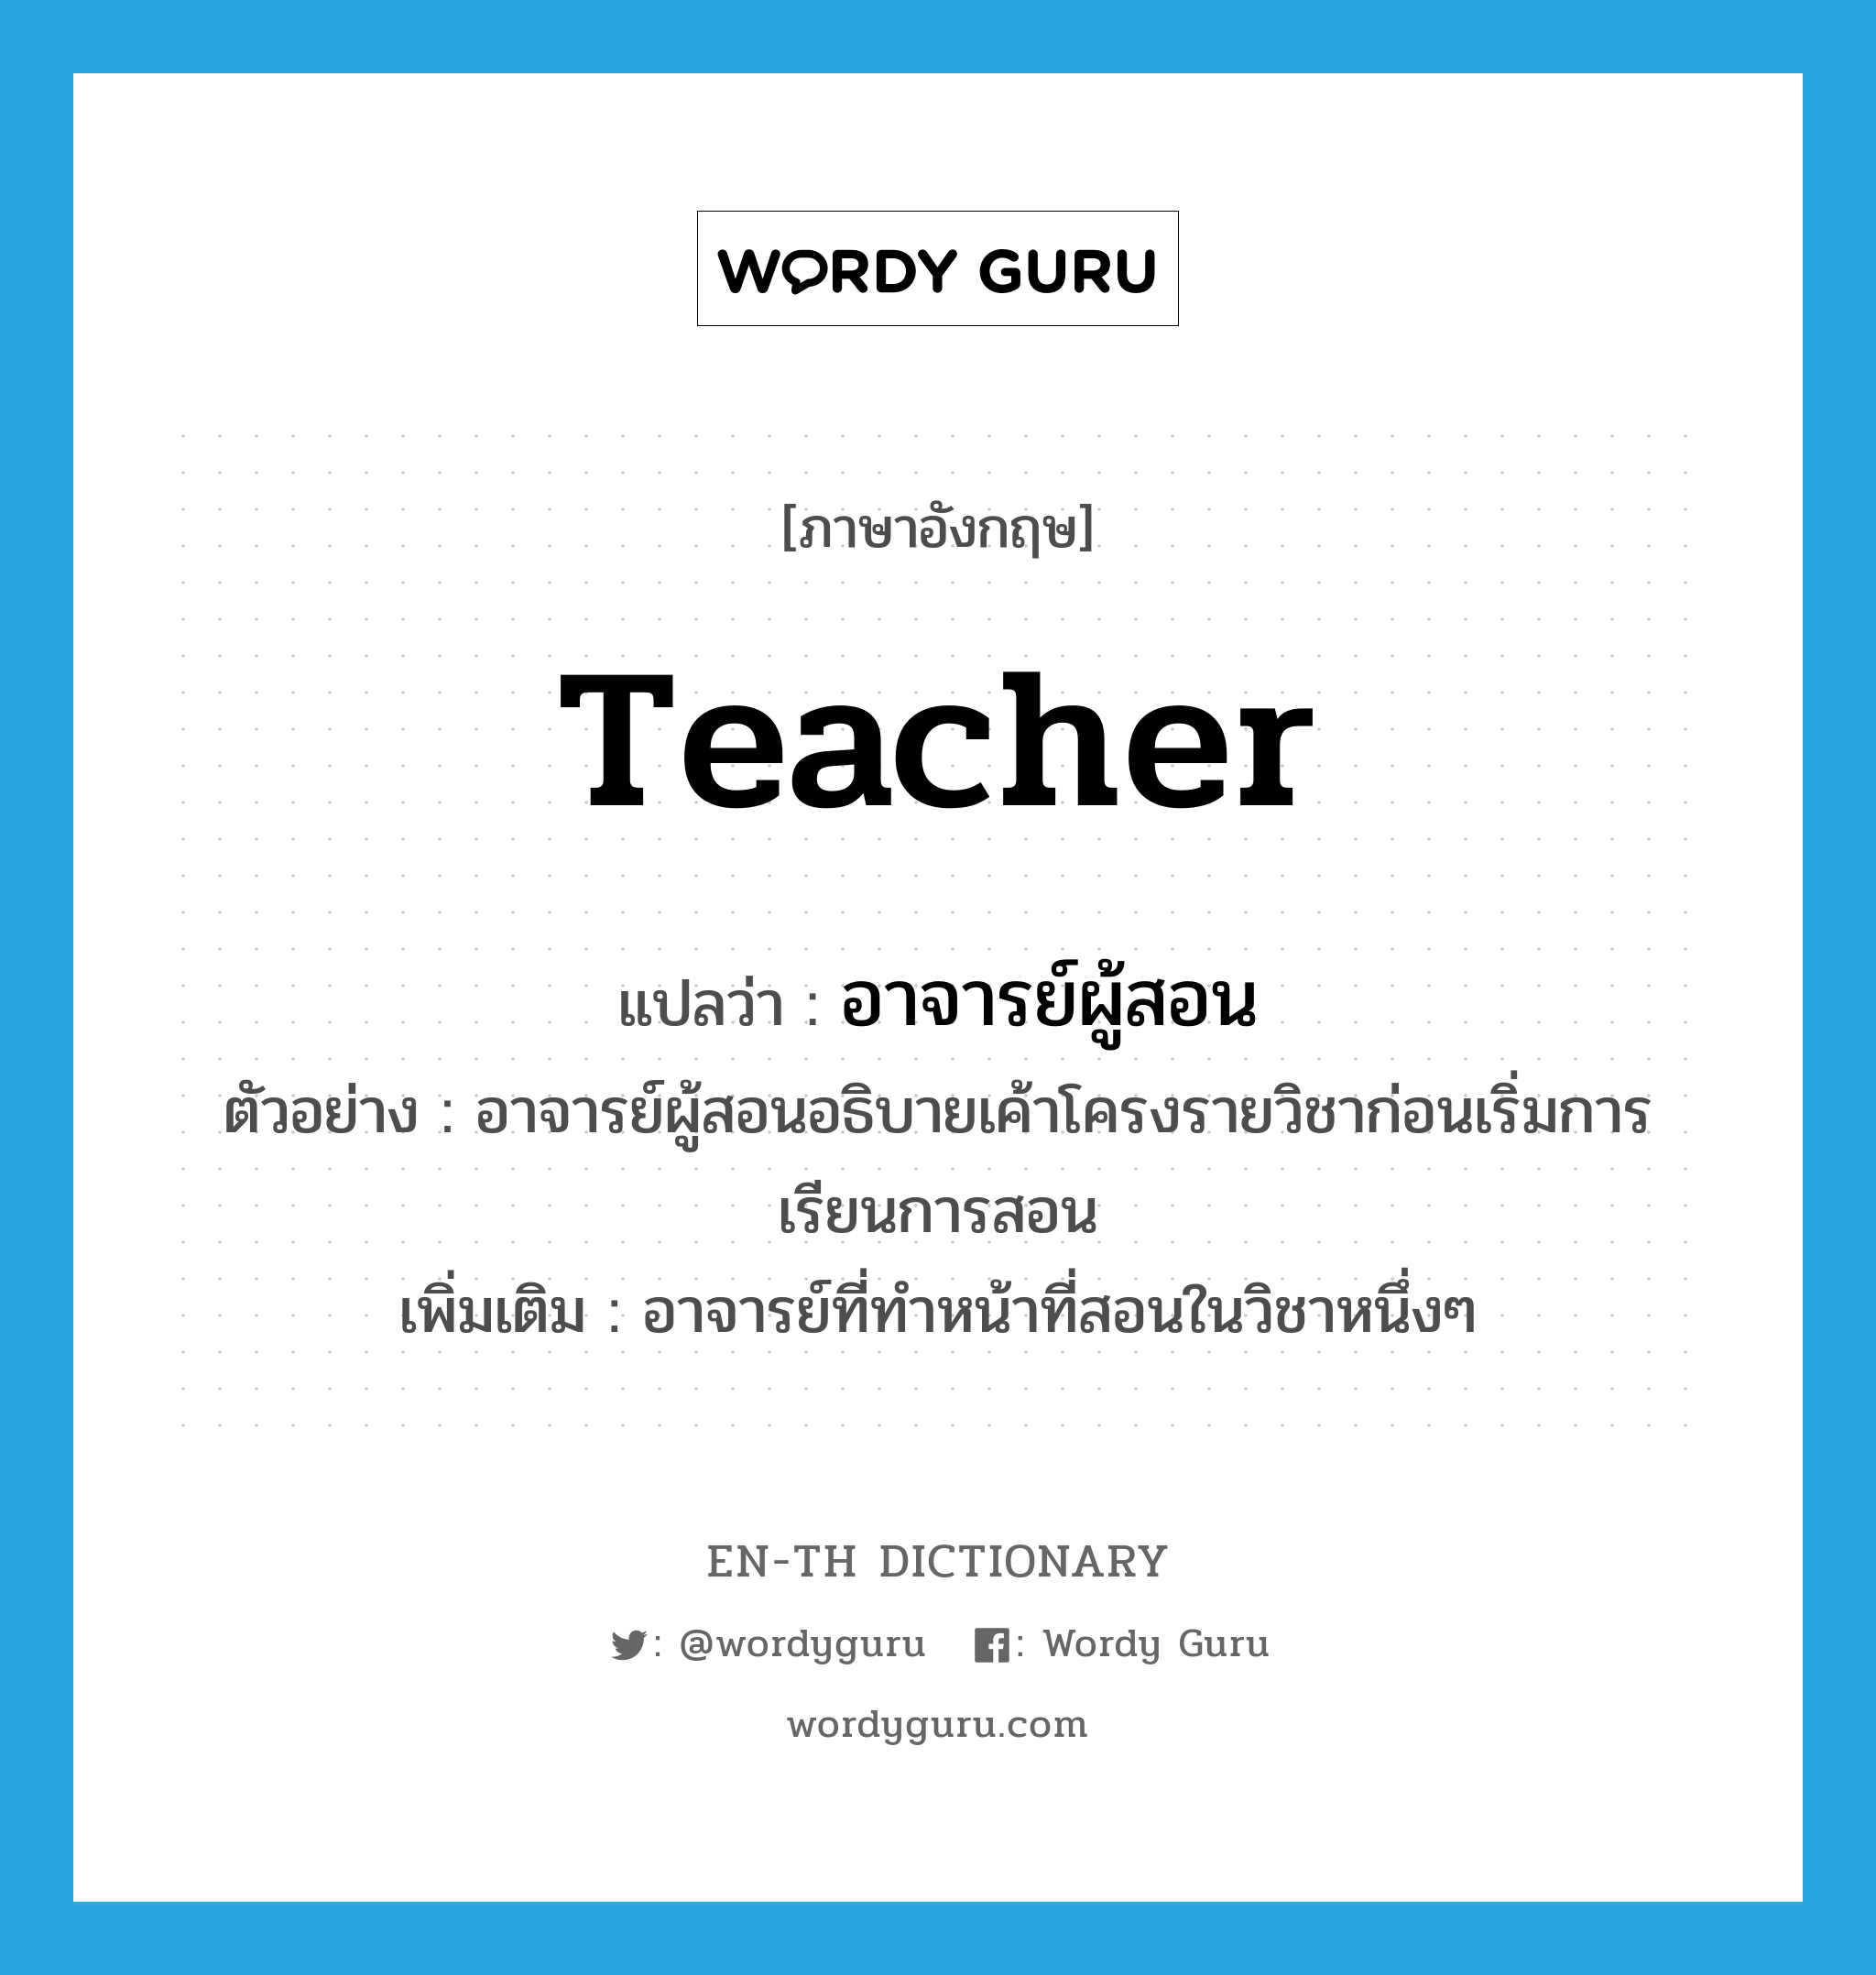 teacher แปลว่า?, คำศัพท์ภาษาอังกฤษ teacher แปลว่า อาจารย์ผู้สอน ประเภท N ตัวอย่าง อาจารย์ผู้สอนอธิบายเค้าโครงรายวิชาก่อนเริ่มการเรียนการสอน เพิ่มเติม อาจารย์ที่ทำหน้าที่สอนในวิชาหนึ่งๆ หมวด N